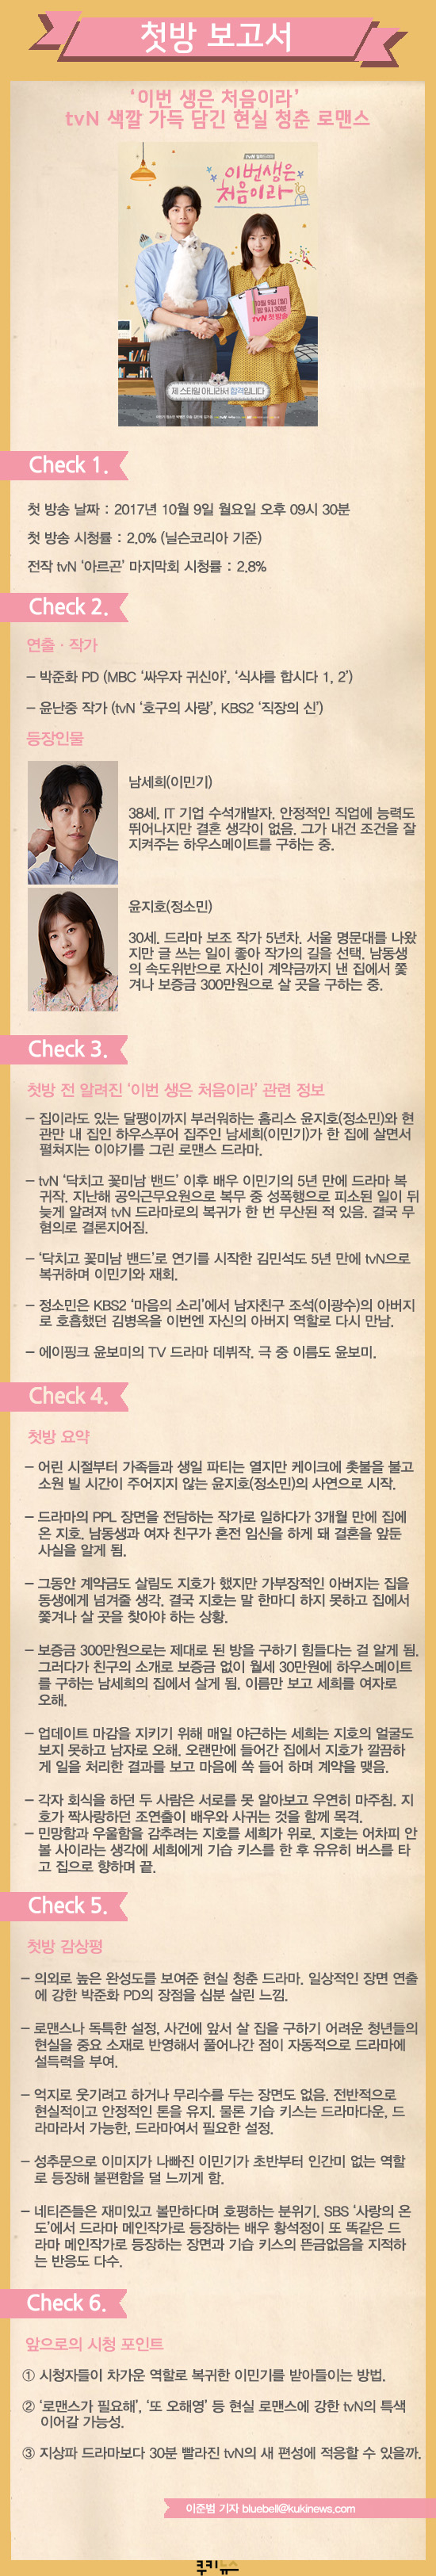 [첫방 보고서] ‘이번 생은 처음이라’ tvN 색깔 가득 담긴 현실 청춘 로맨스